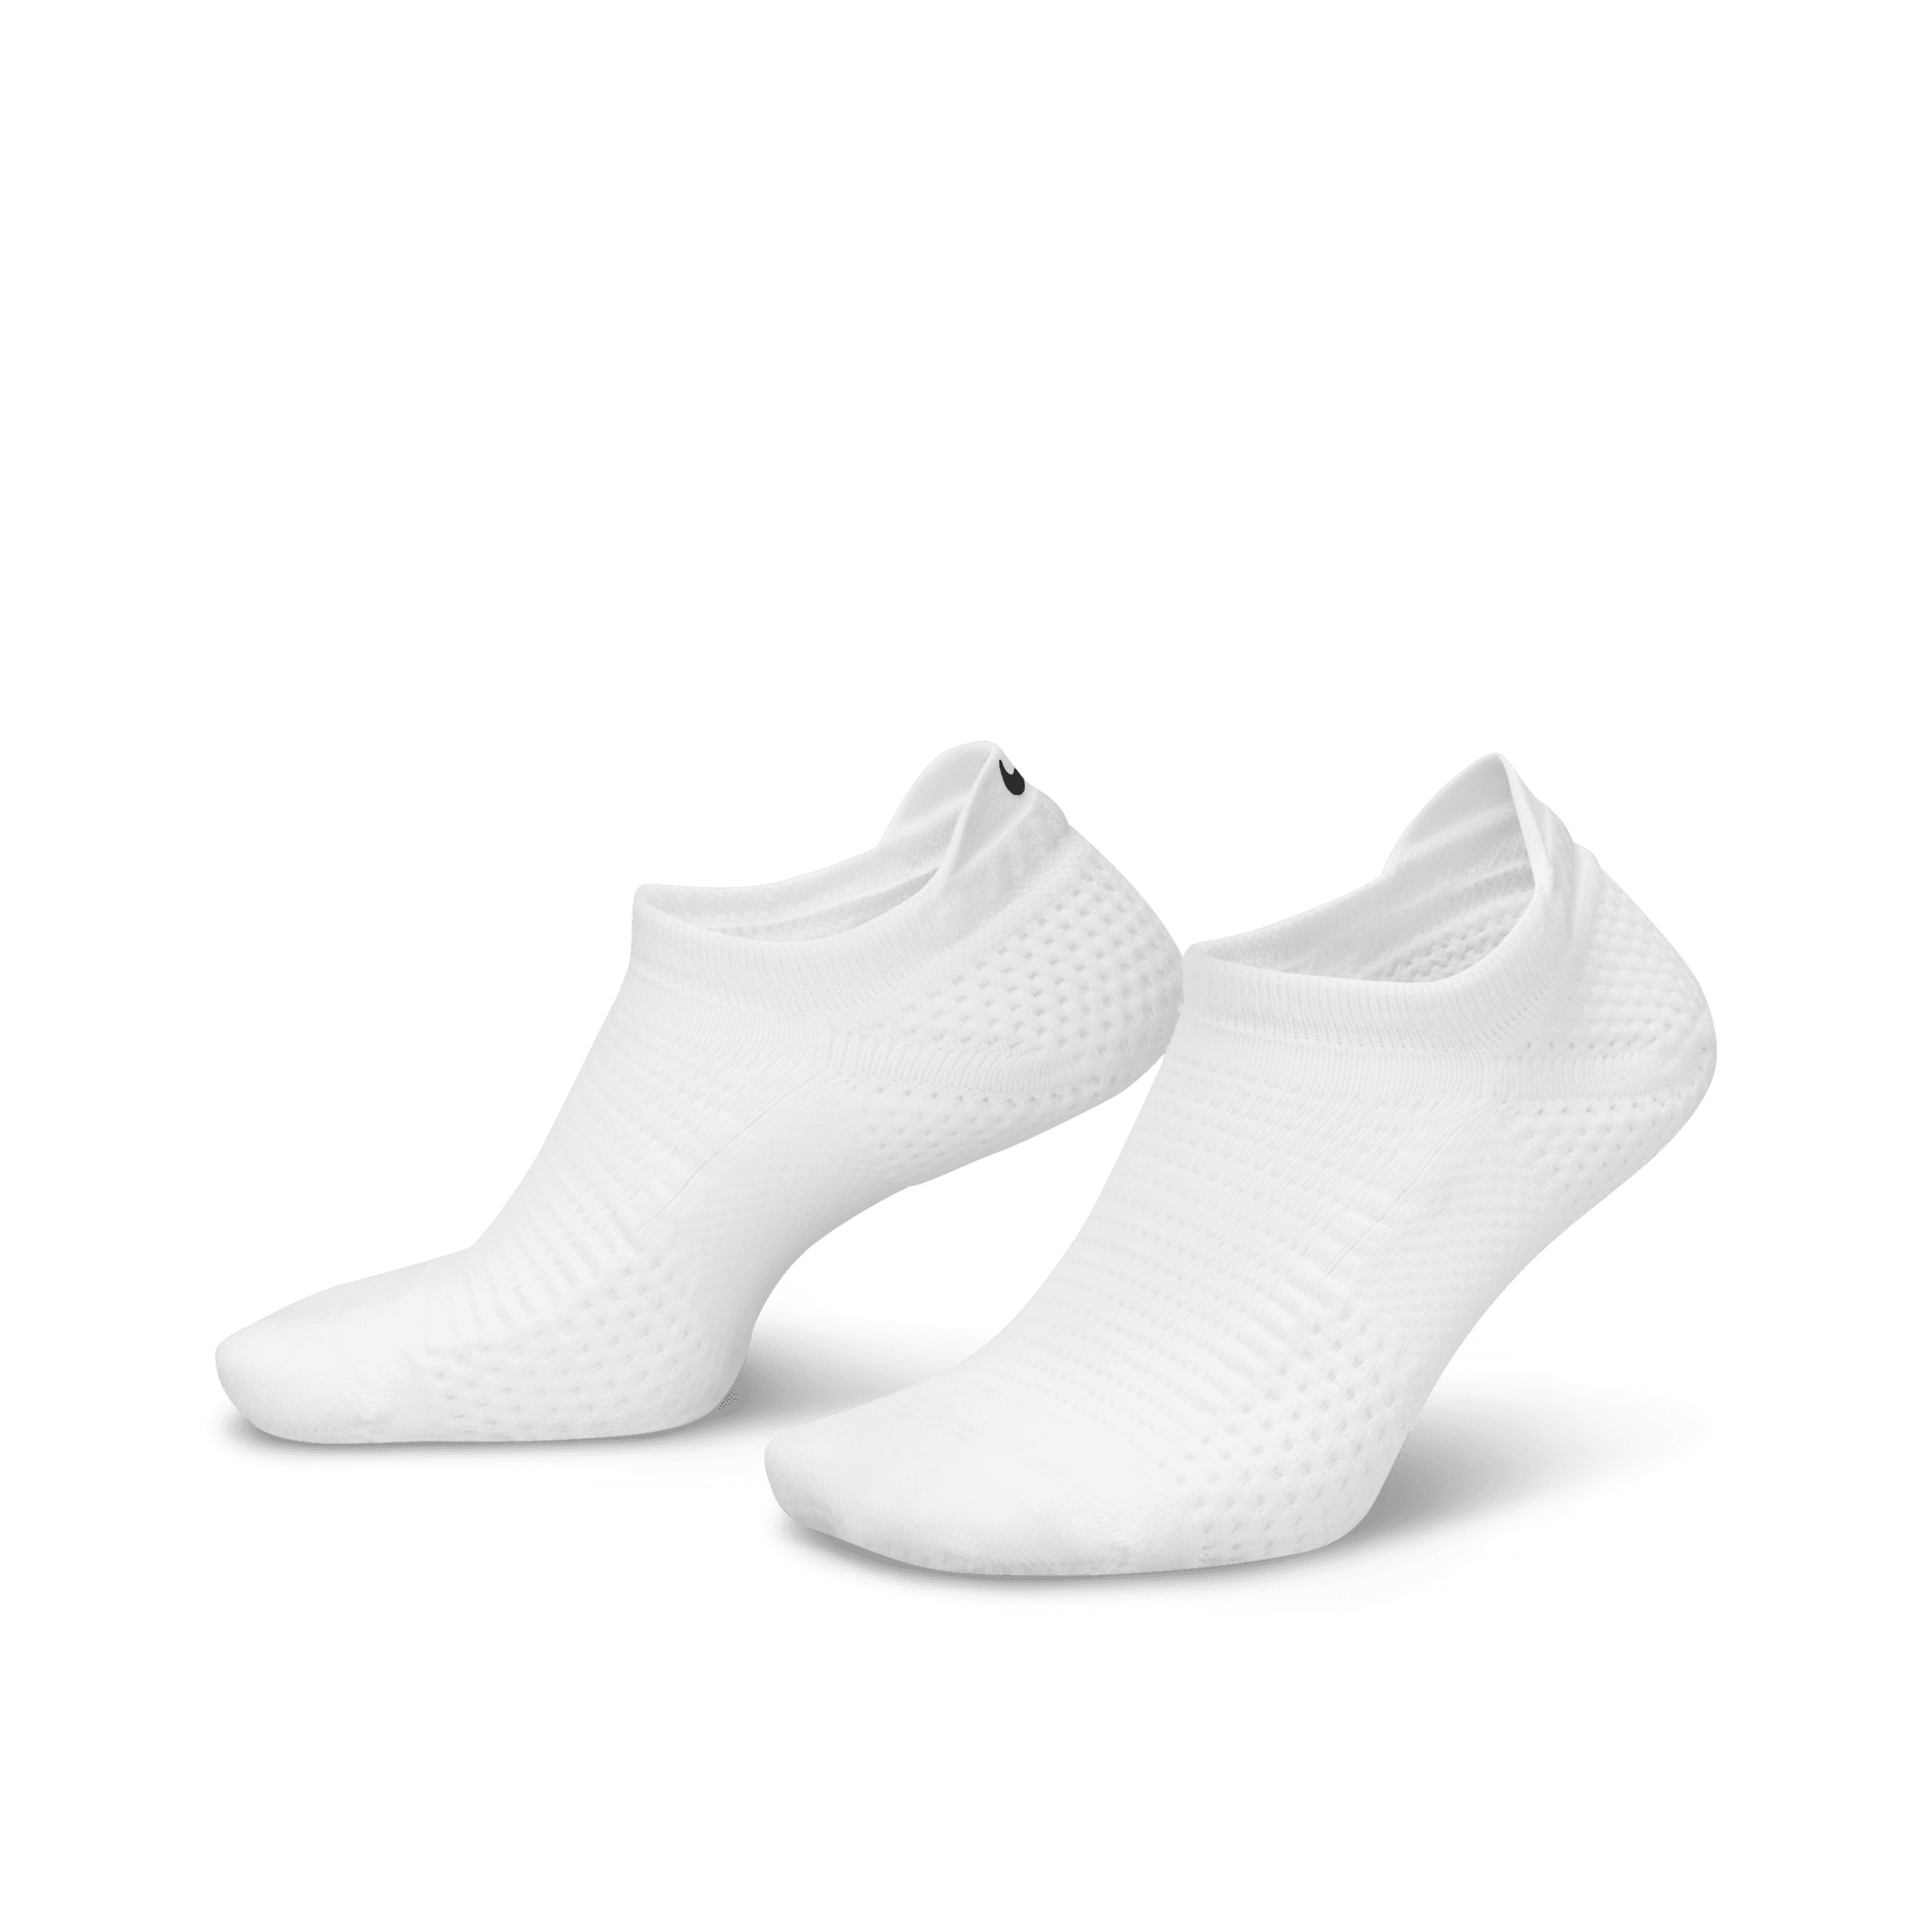 Fantasmini ammortizzati Dri-FIT ADV Nike Unicorn (1 paio) - Bianco